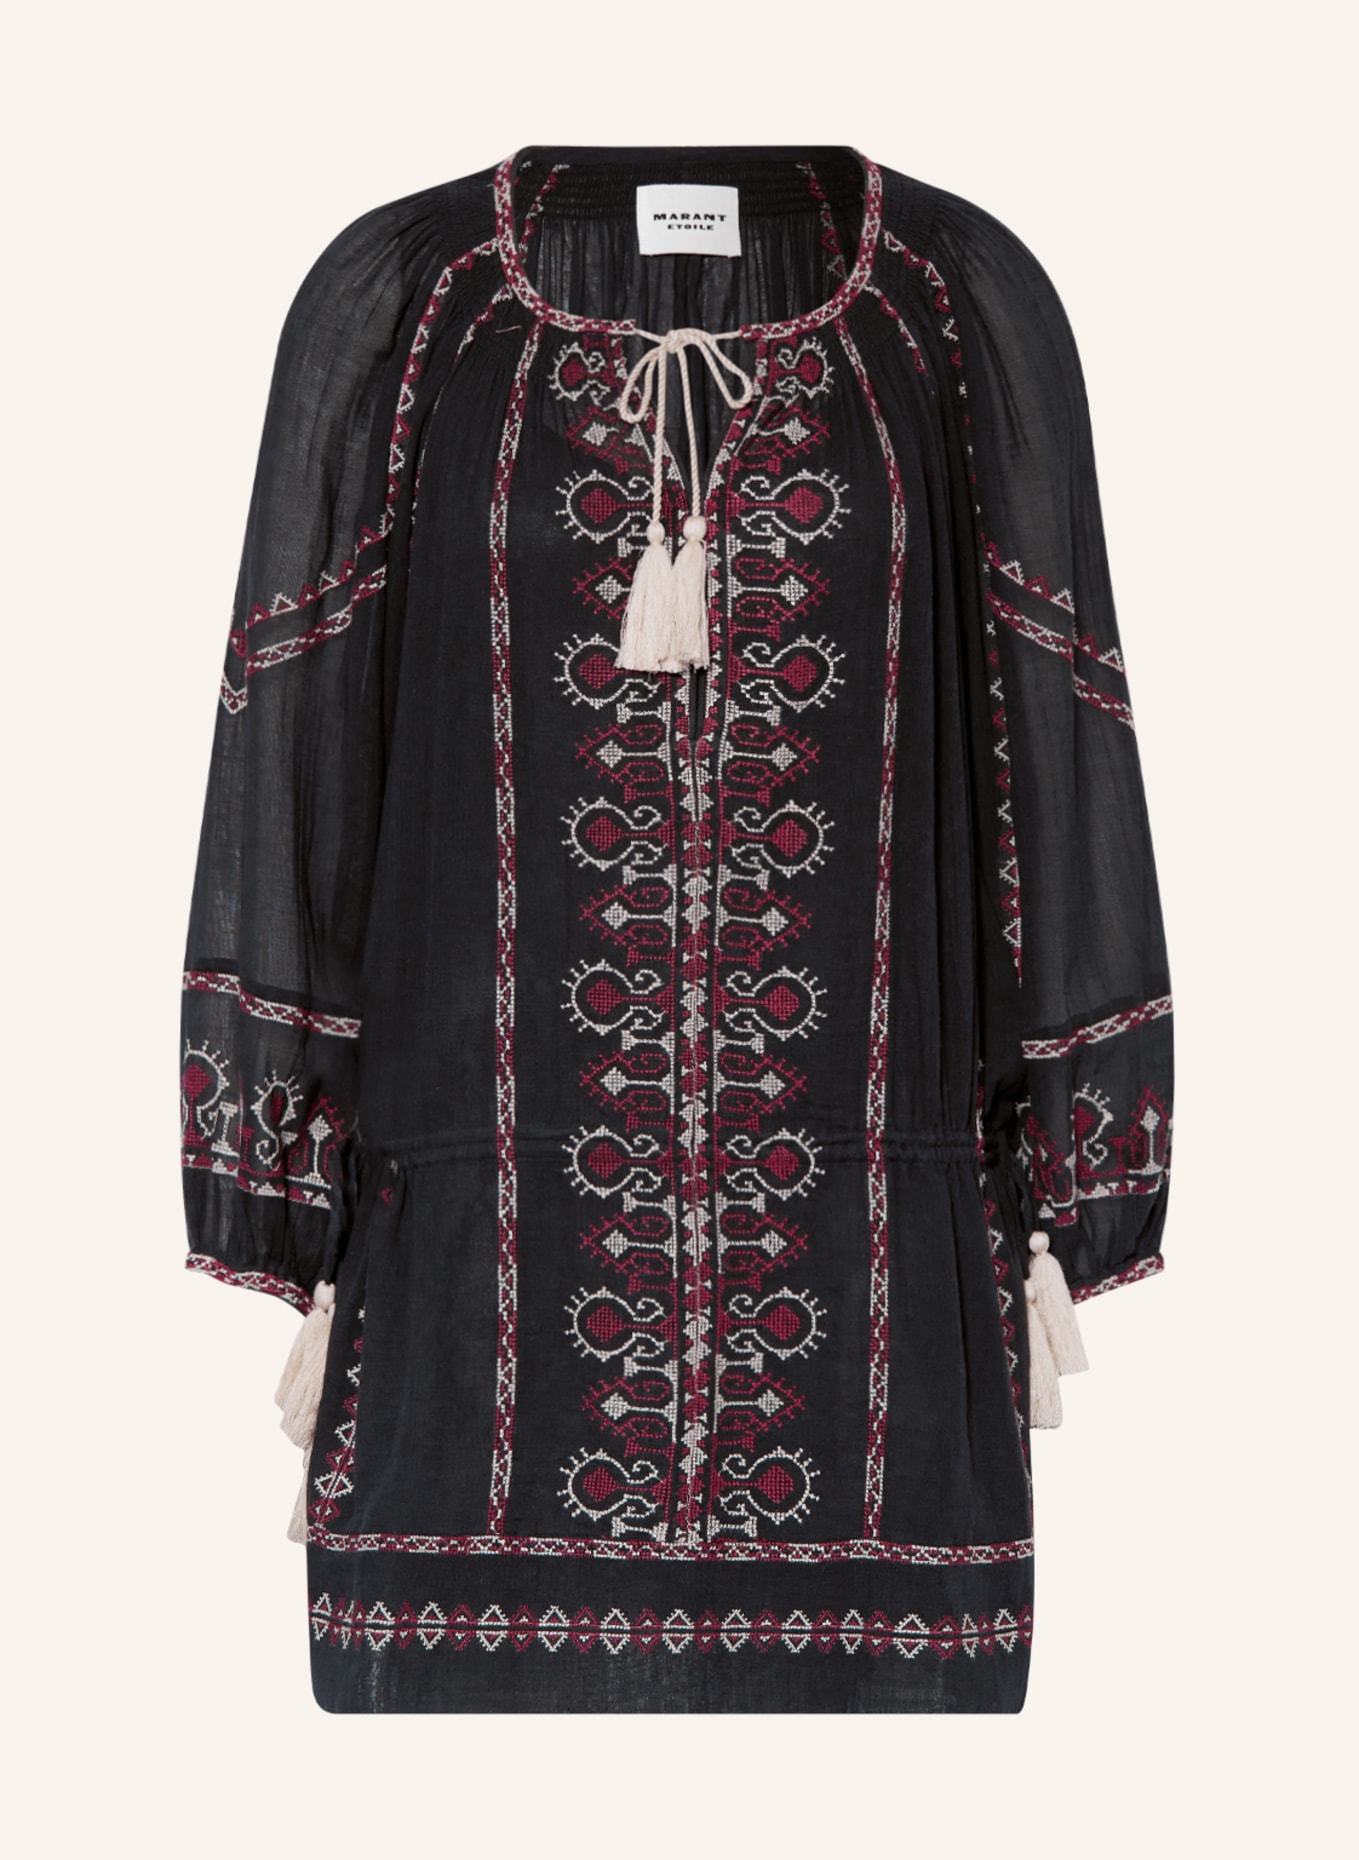 MARANT ÉTOILE Kleid PARSLEY mit Stickereien, Farbe: SCHWARZ/ FUCHSIA/ WEISS (Bild 1)